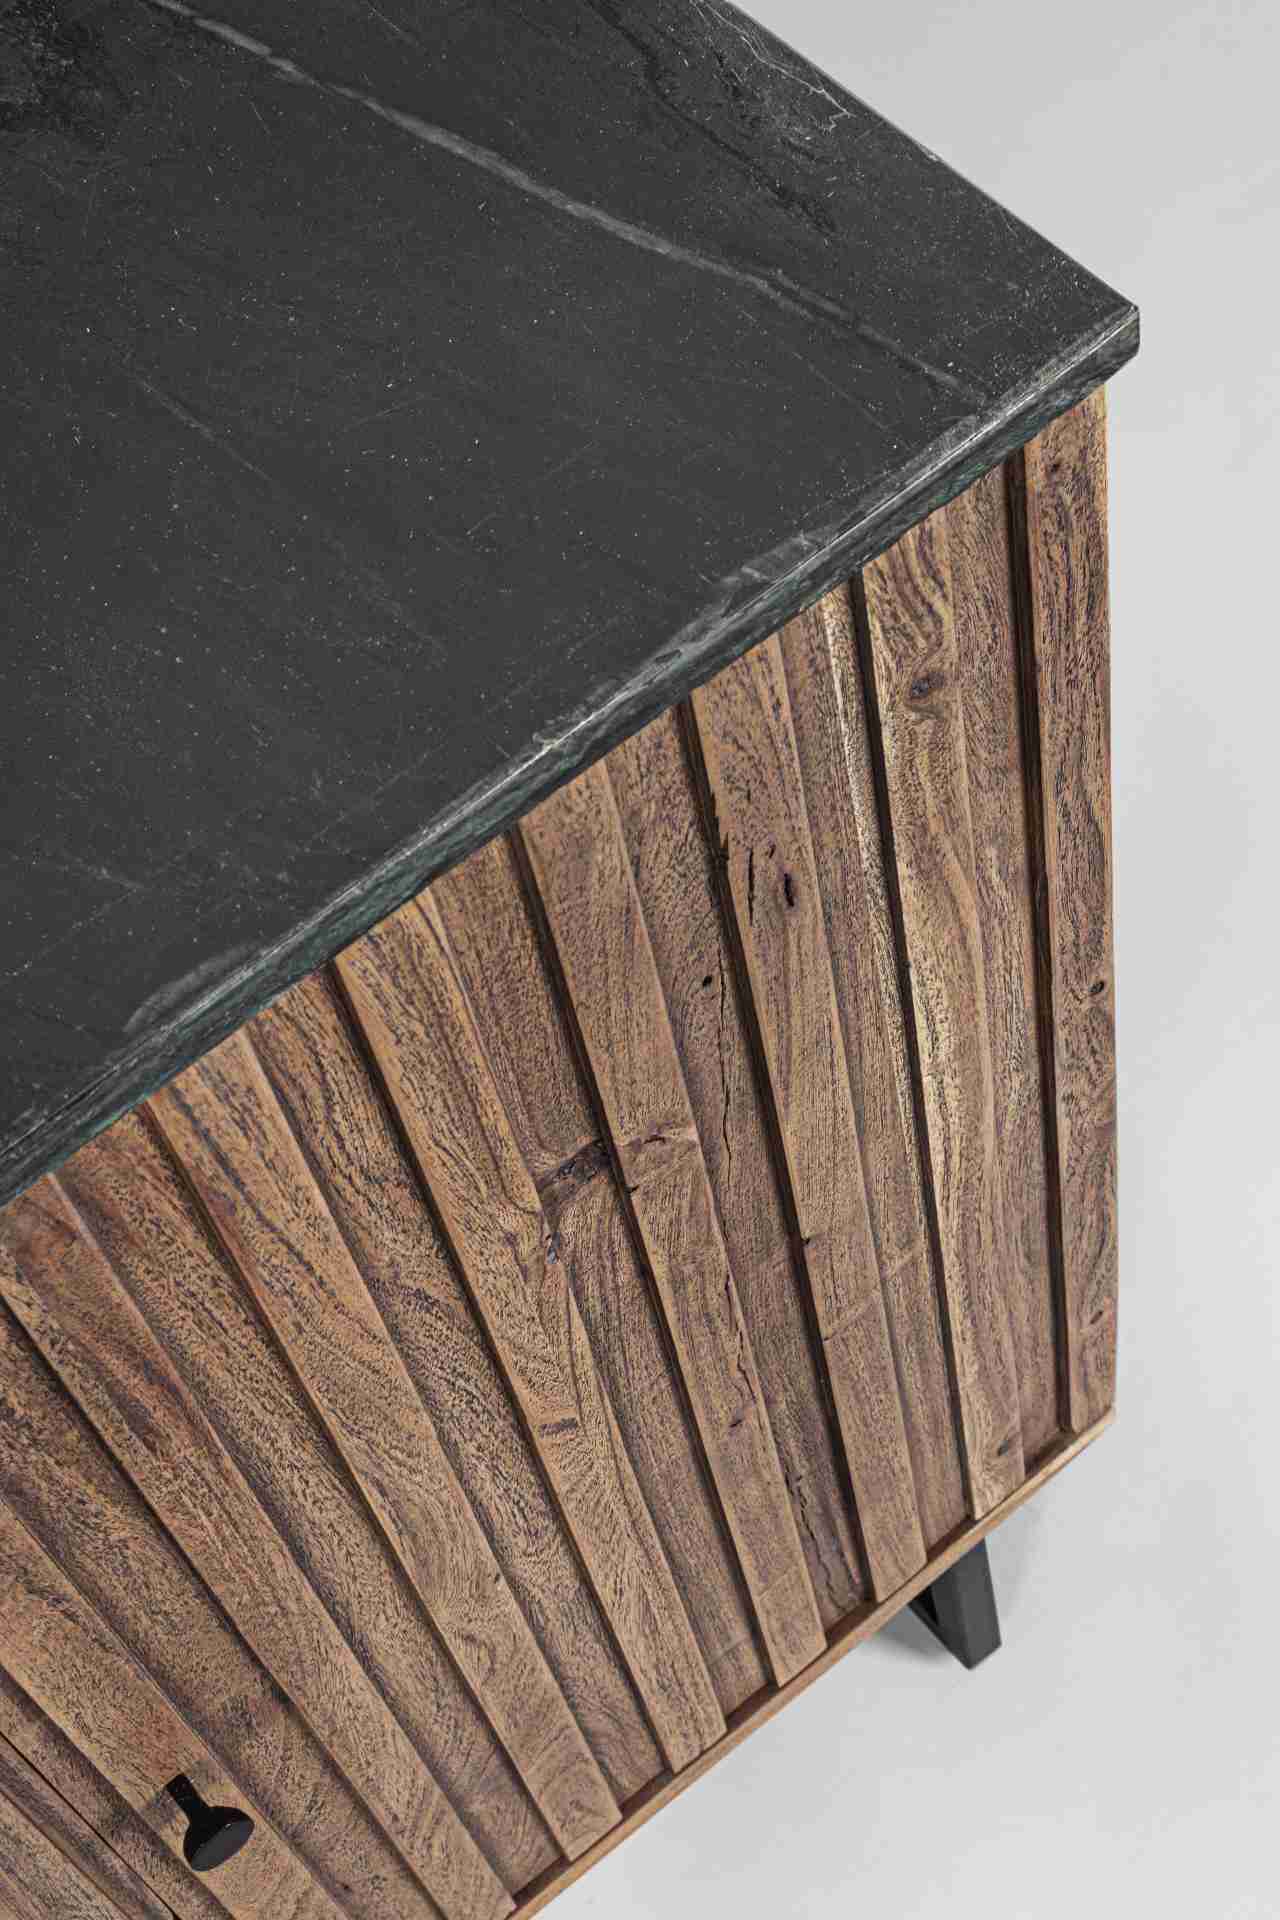 Das Sideboard Norfolk überzeugt mit seinem modernem Design. Gefertigt wurde es aus Akazien-Holz, welches einen natürlichen Farbton besitzt. Das Gestell ist aus Metall und hat eine schwarze Farbe. Die Oberflächenplatte ist aus Marmor. Das Sideboard verfügt